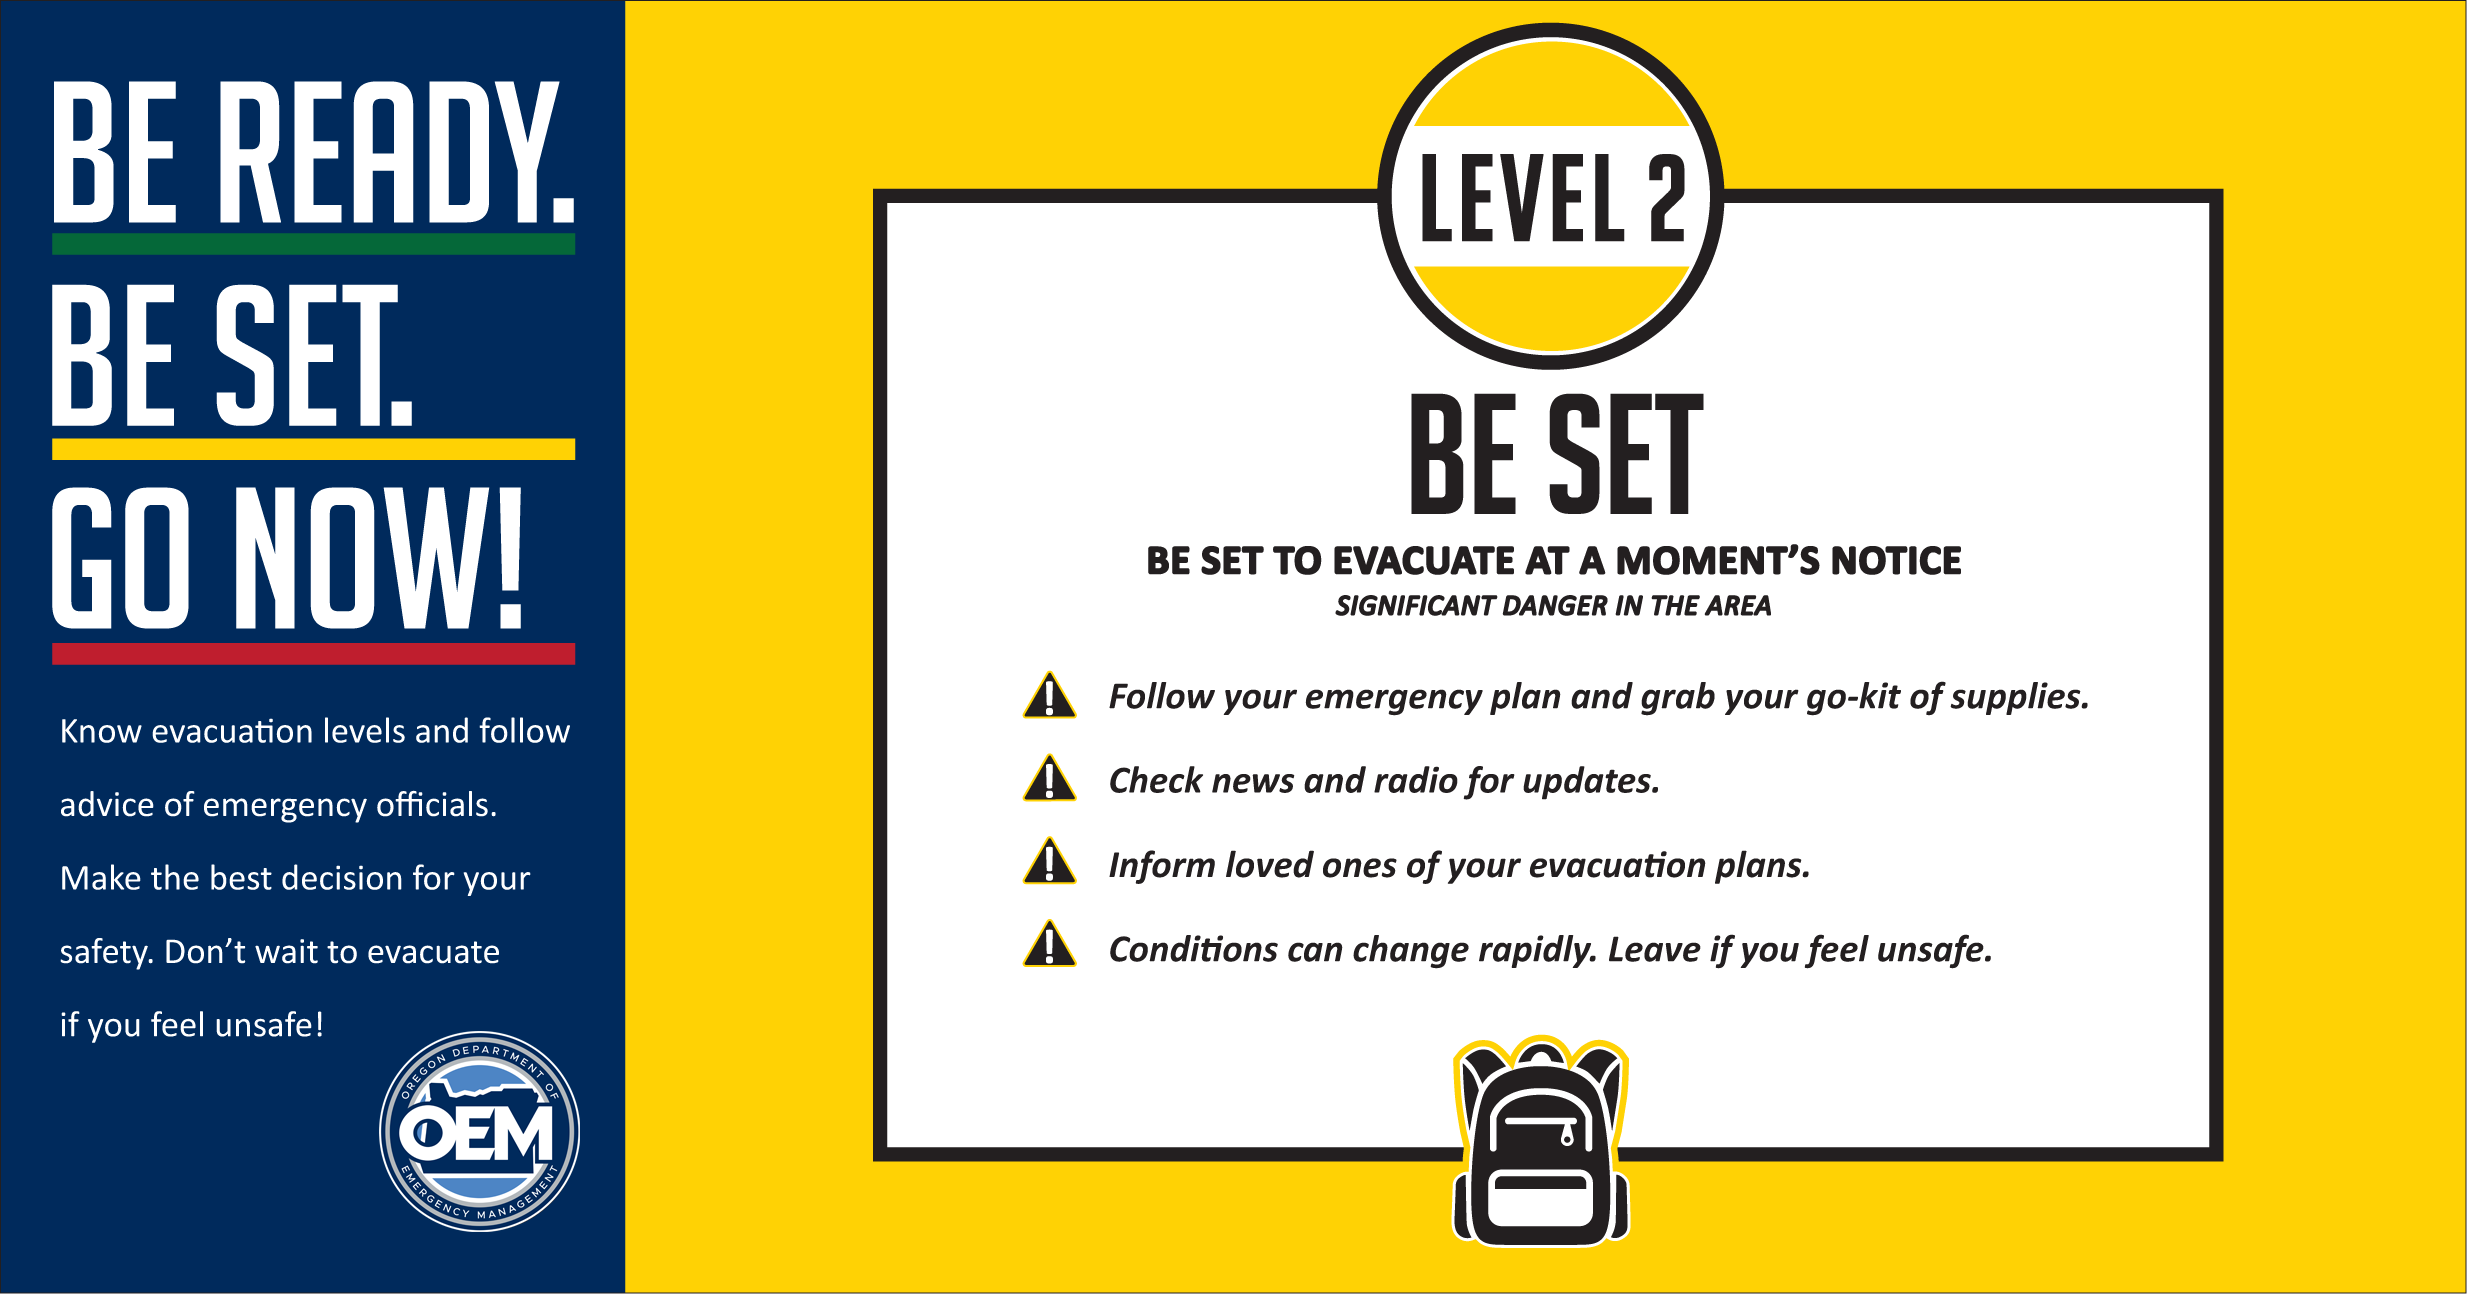 Level 2 - Be Set